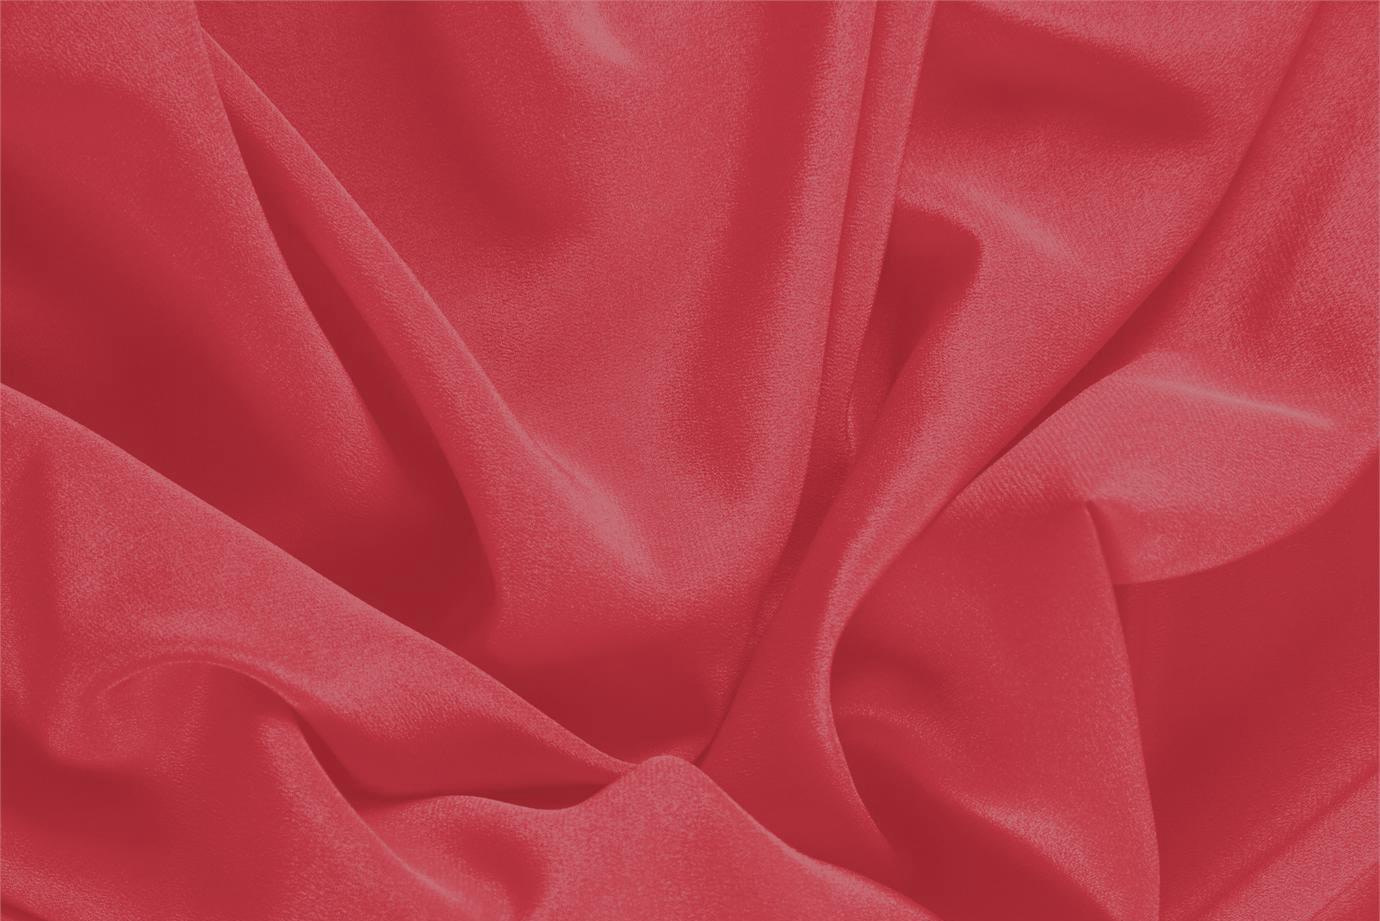 Tessuto Crêpe de Chine Rosso Rubino in Seta per Abbigliamento UN000348